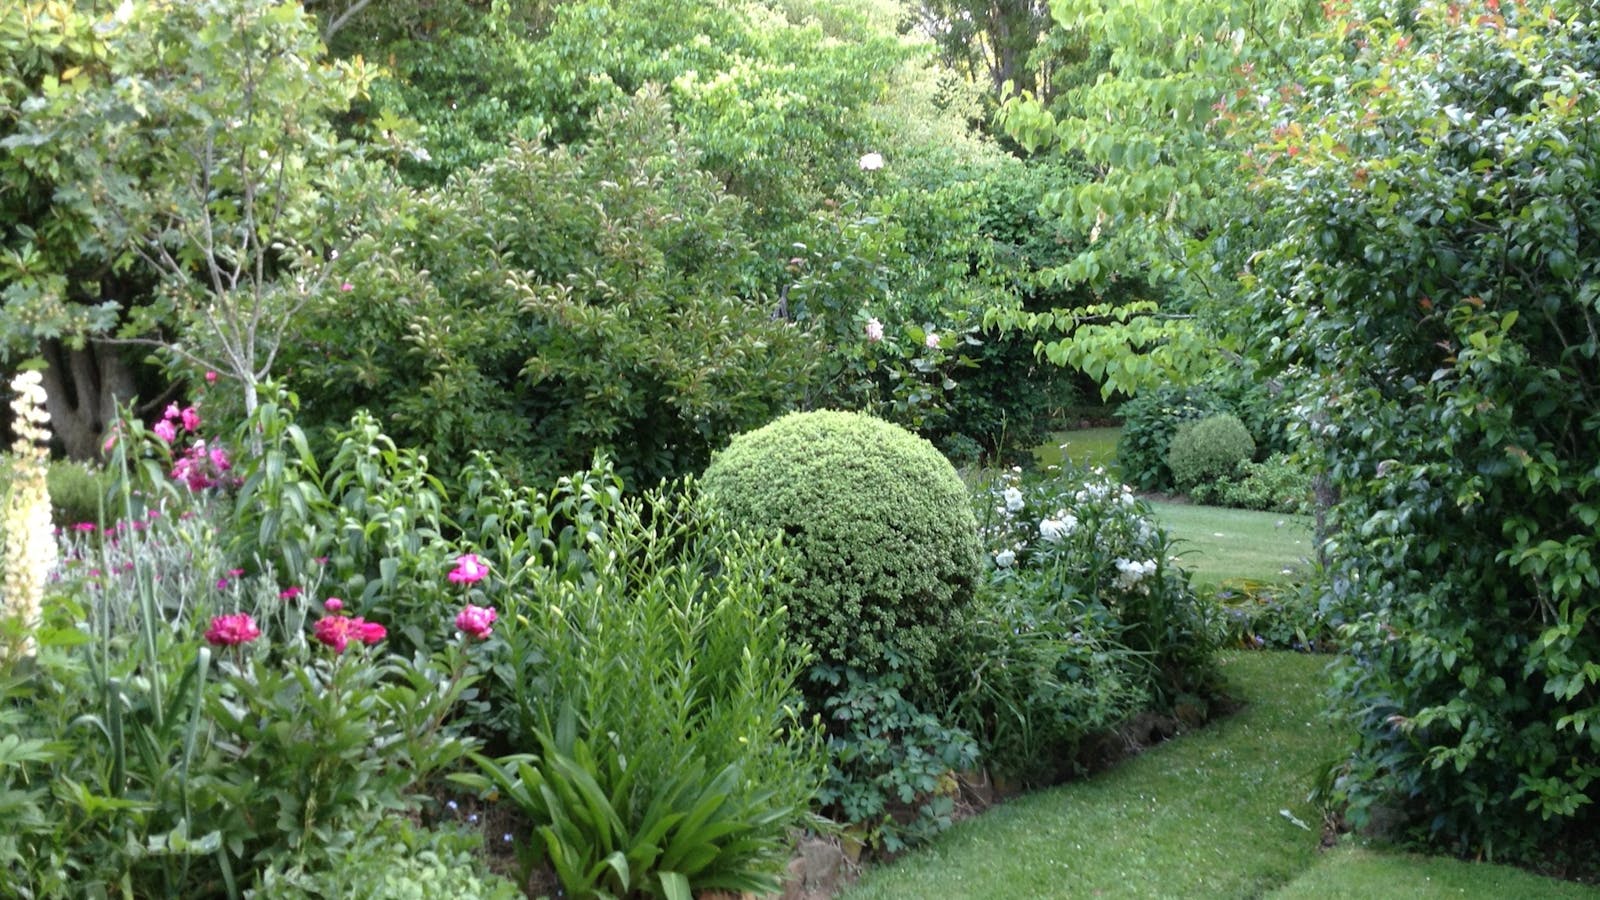 Cottage Garden